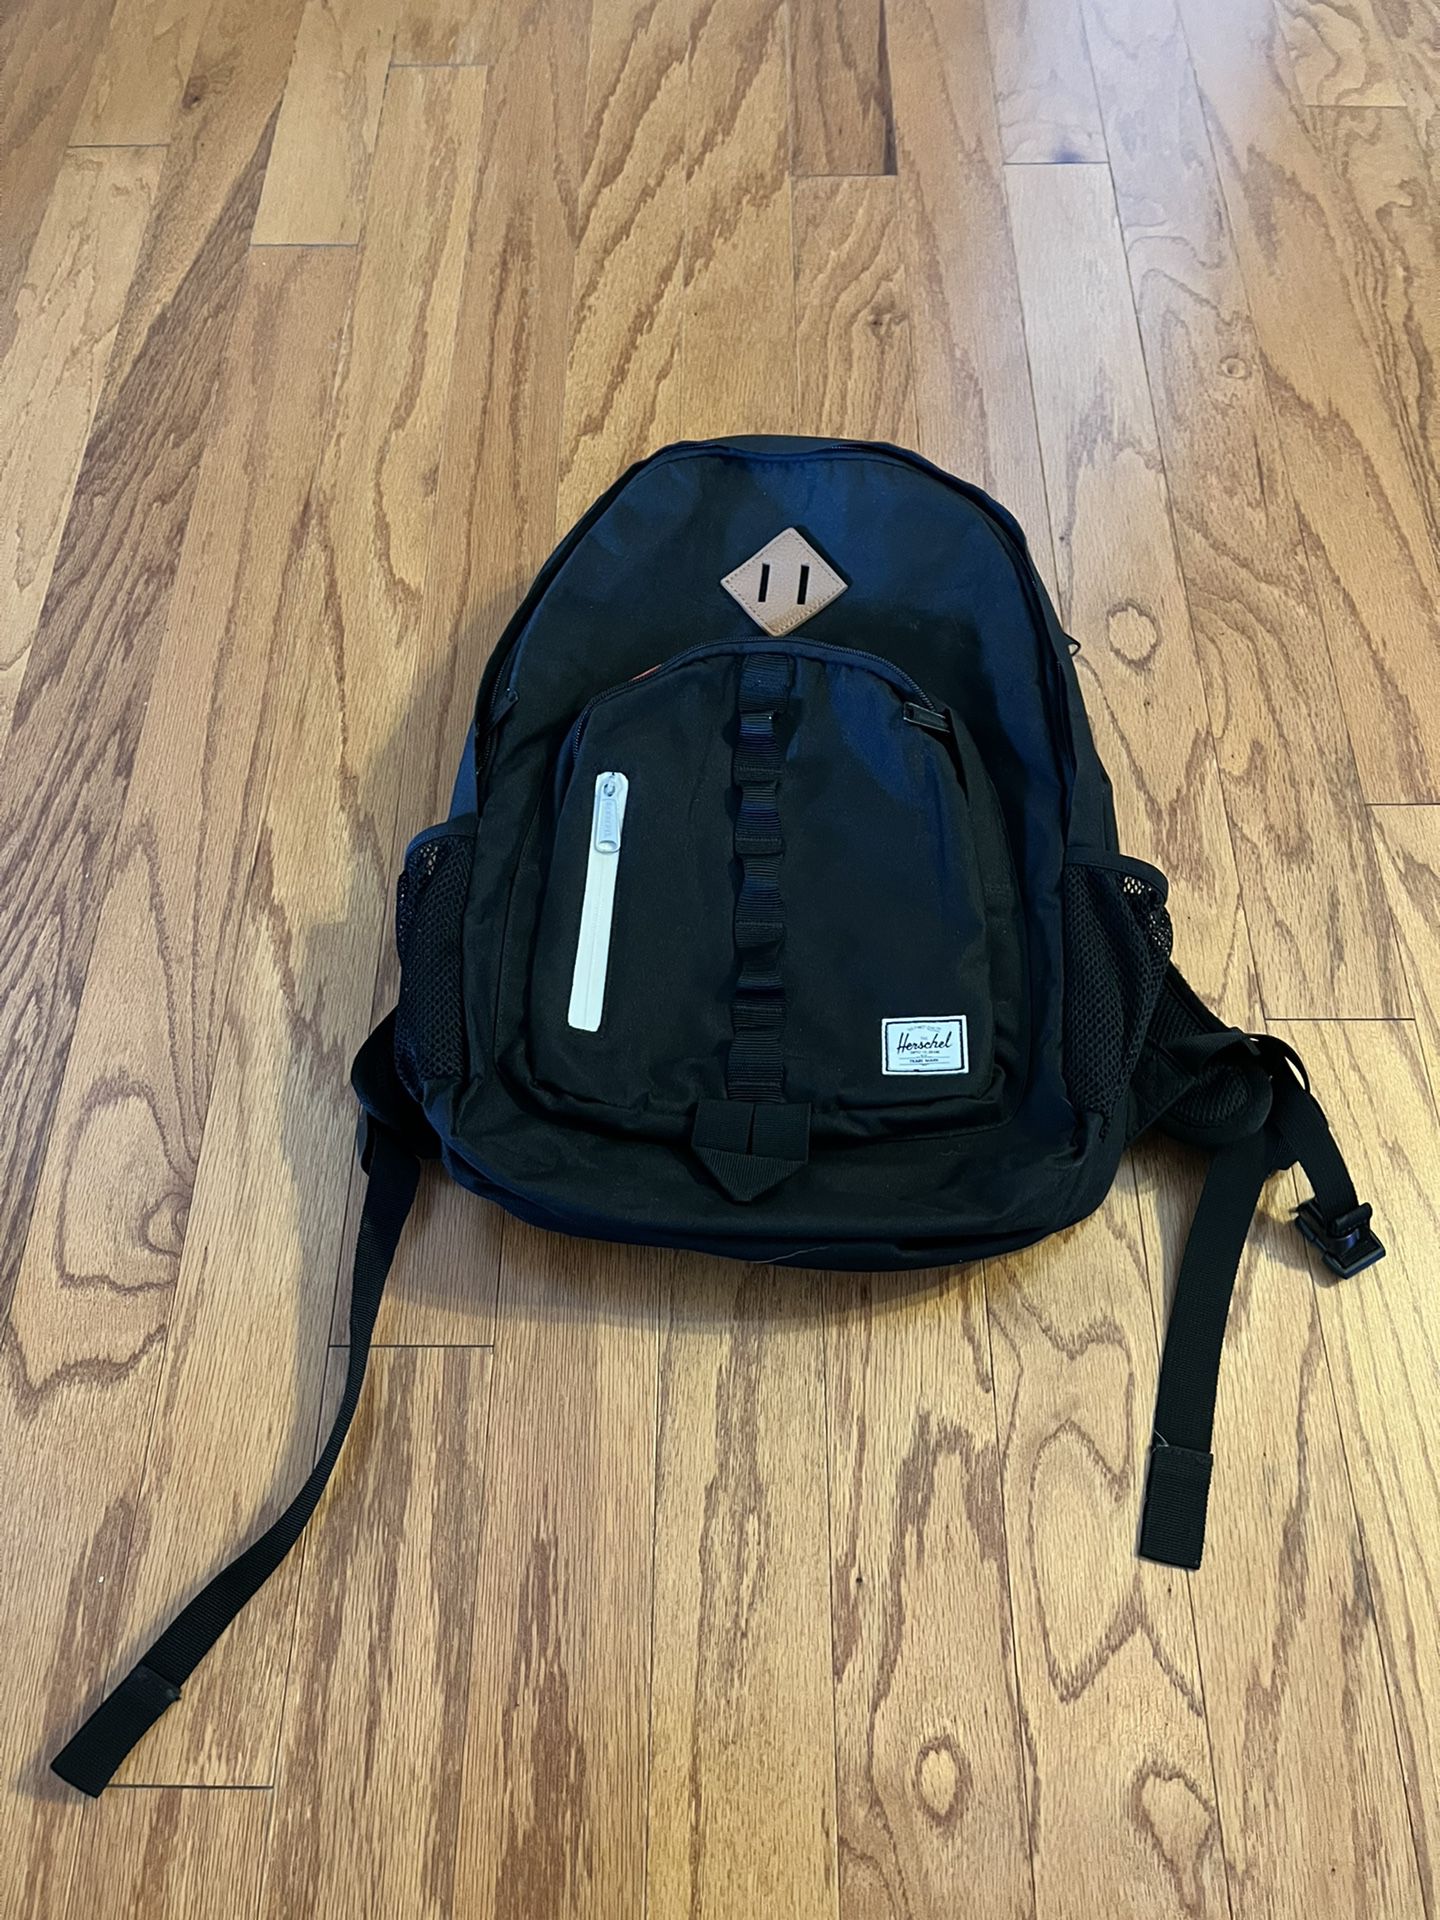 Herschel Backpack Excellent Condition Black 